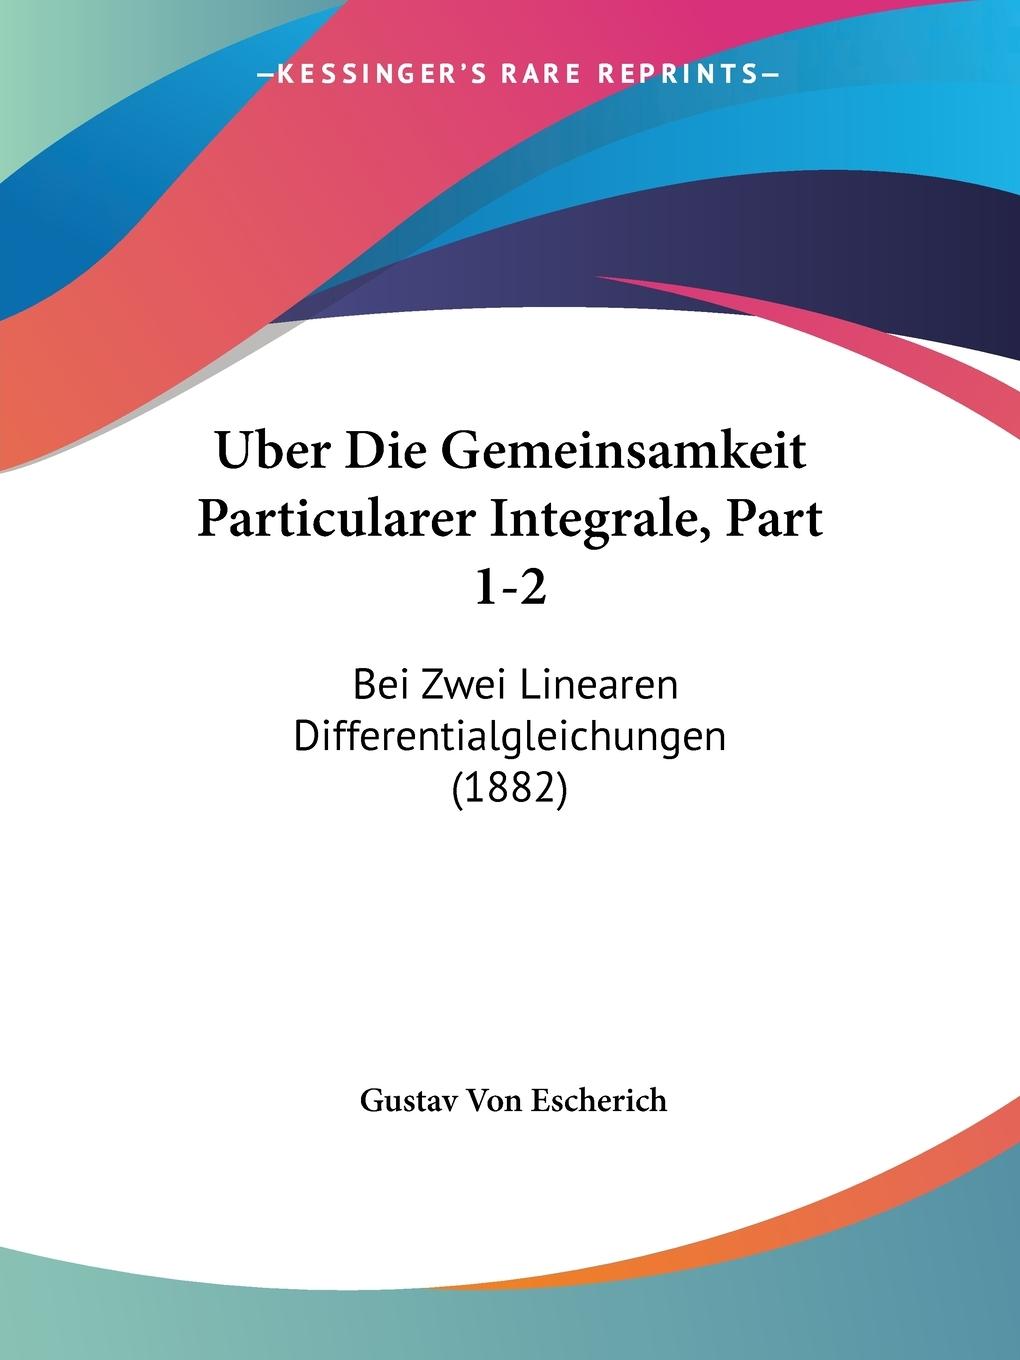 Uber Die Gemeinsamkeit Particularer Integrale, Part 1-2 - Escherich, Gustav Von